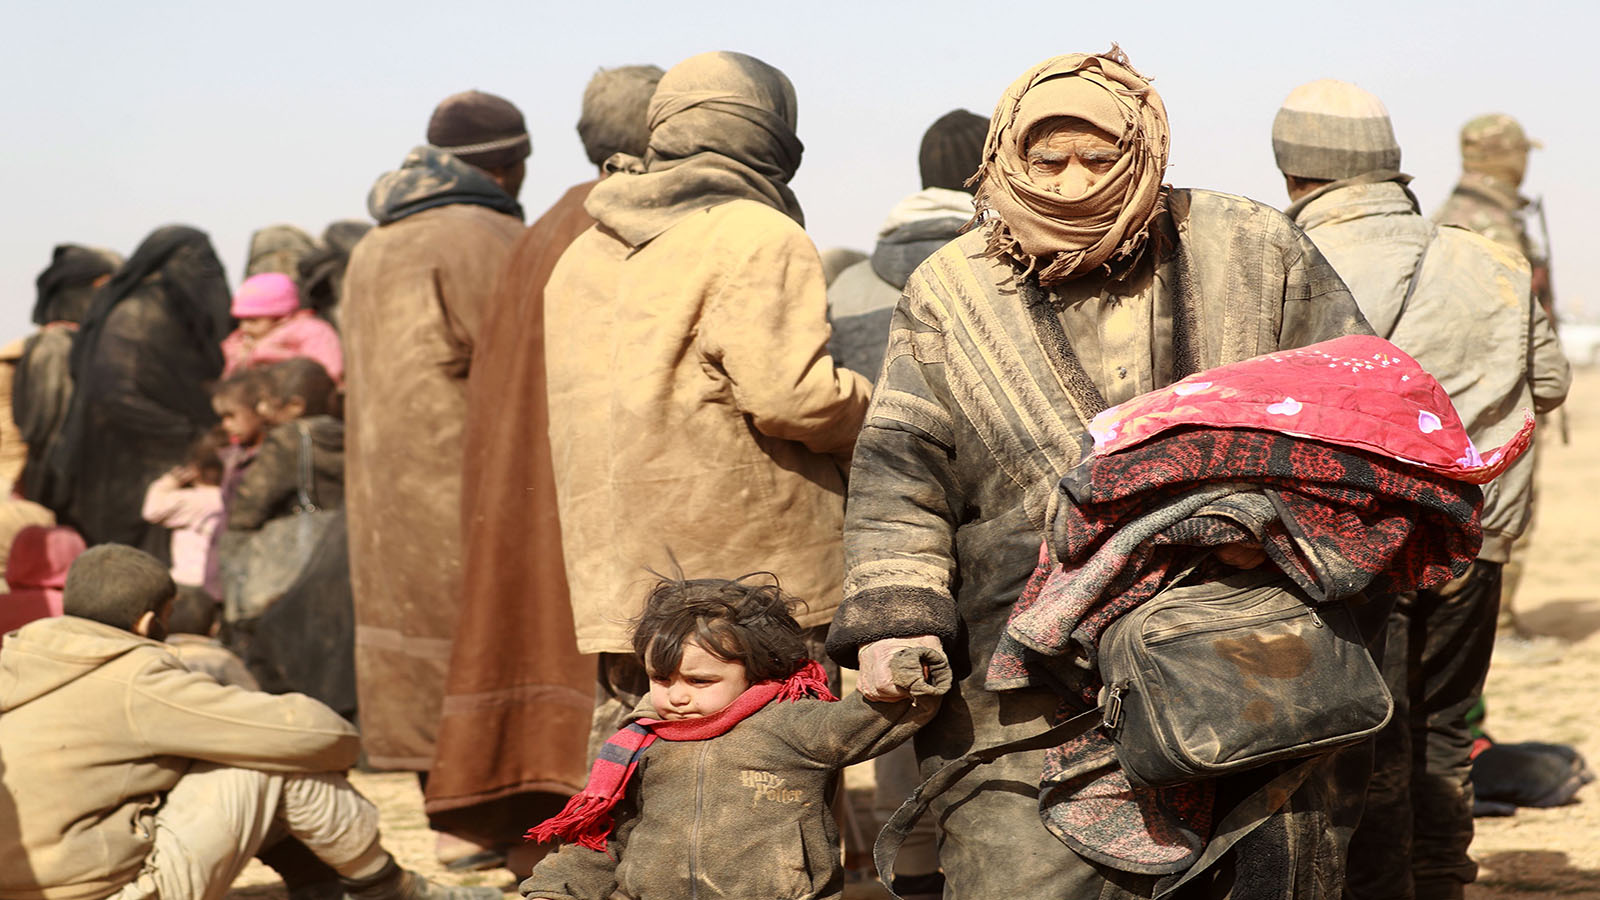 مخيم الإقامة الجبرية: "داعش" يسمح للمدنيين بالمغادرة